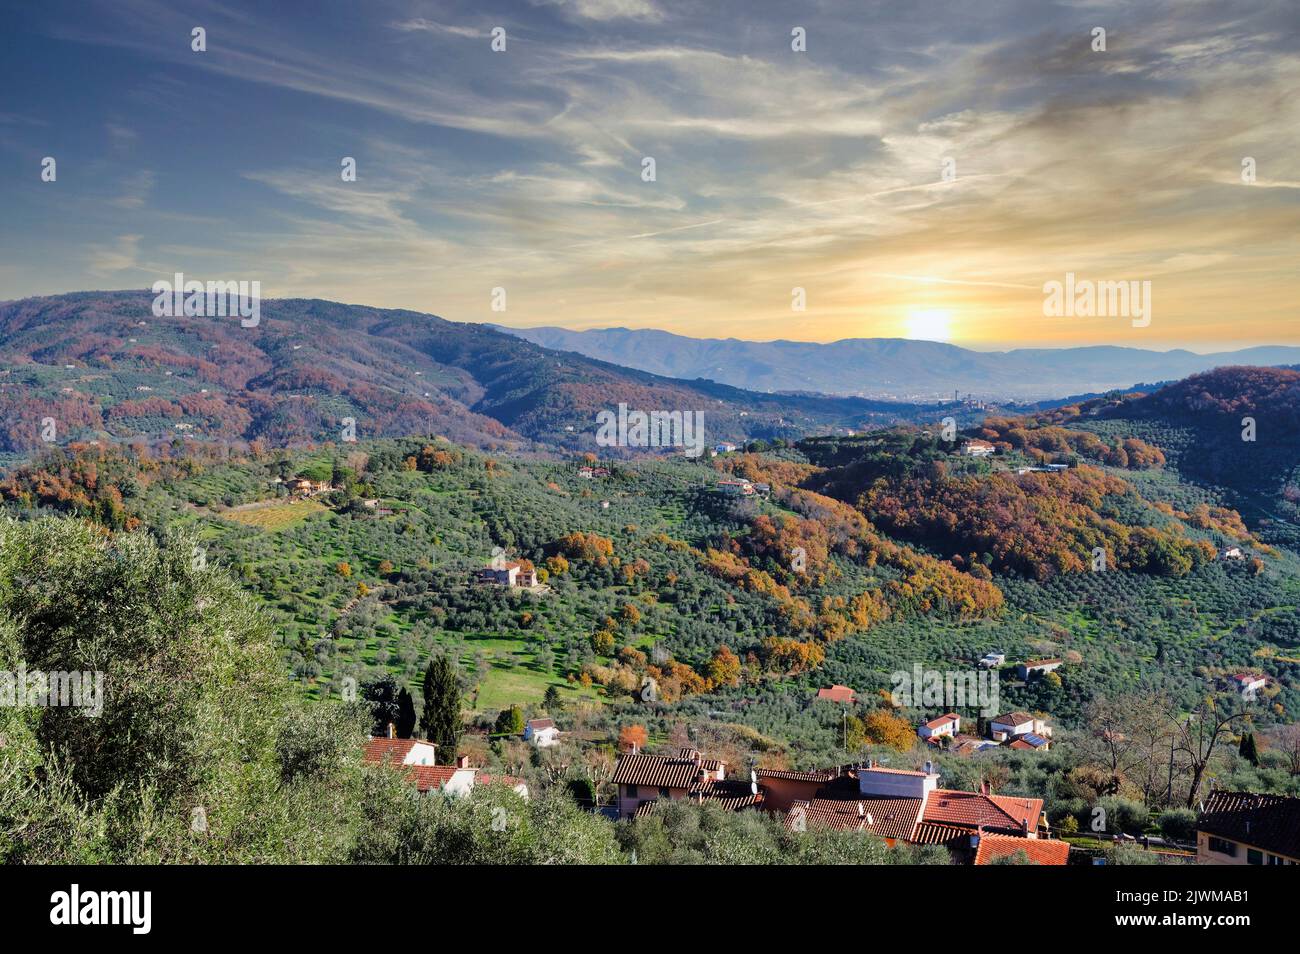 Vista aerea di una valle, Valdinievole Toscana, Italia Foto Stock